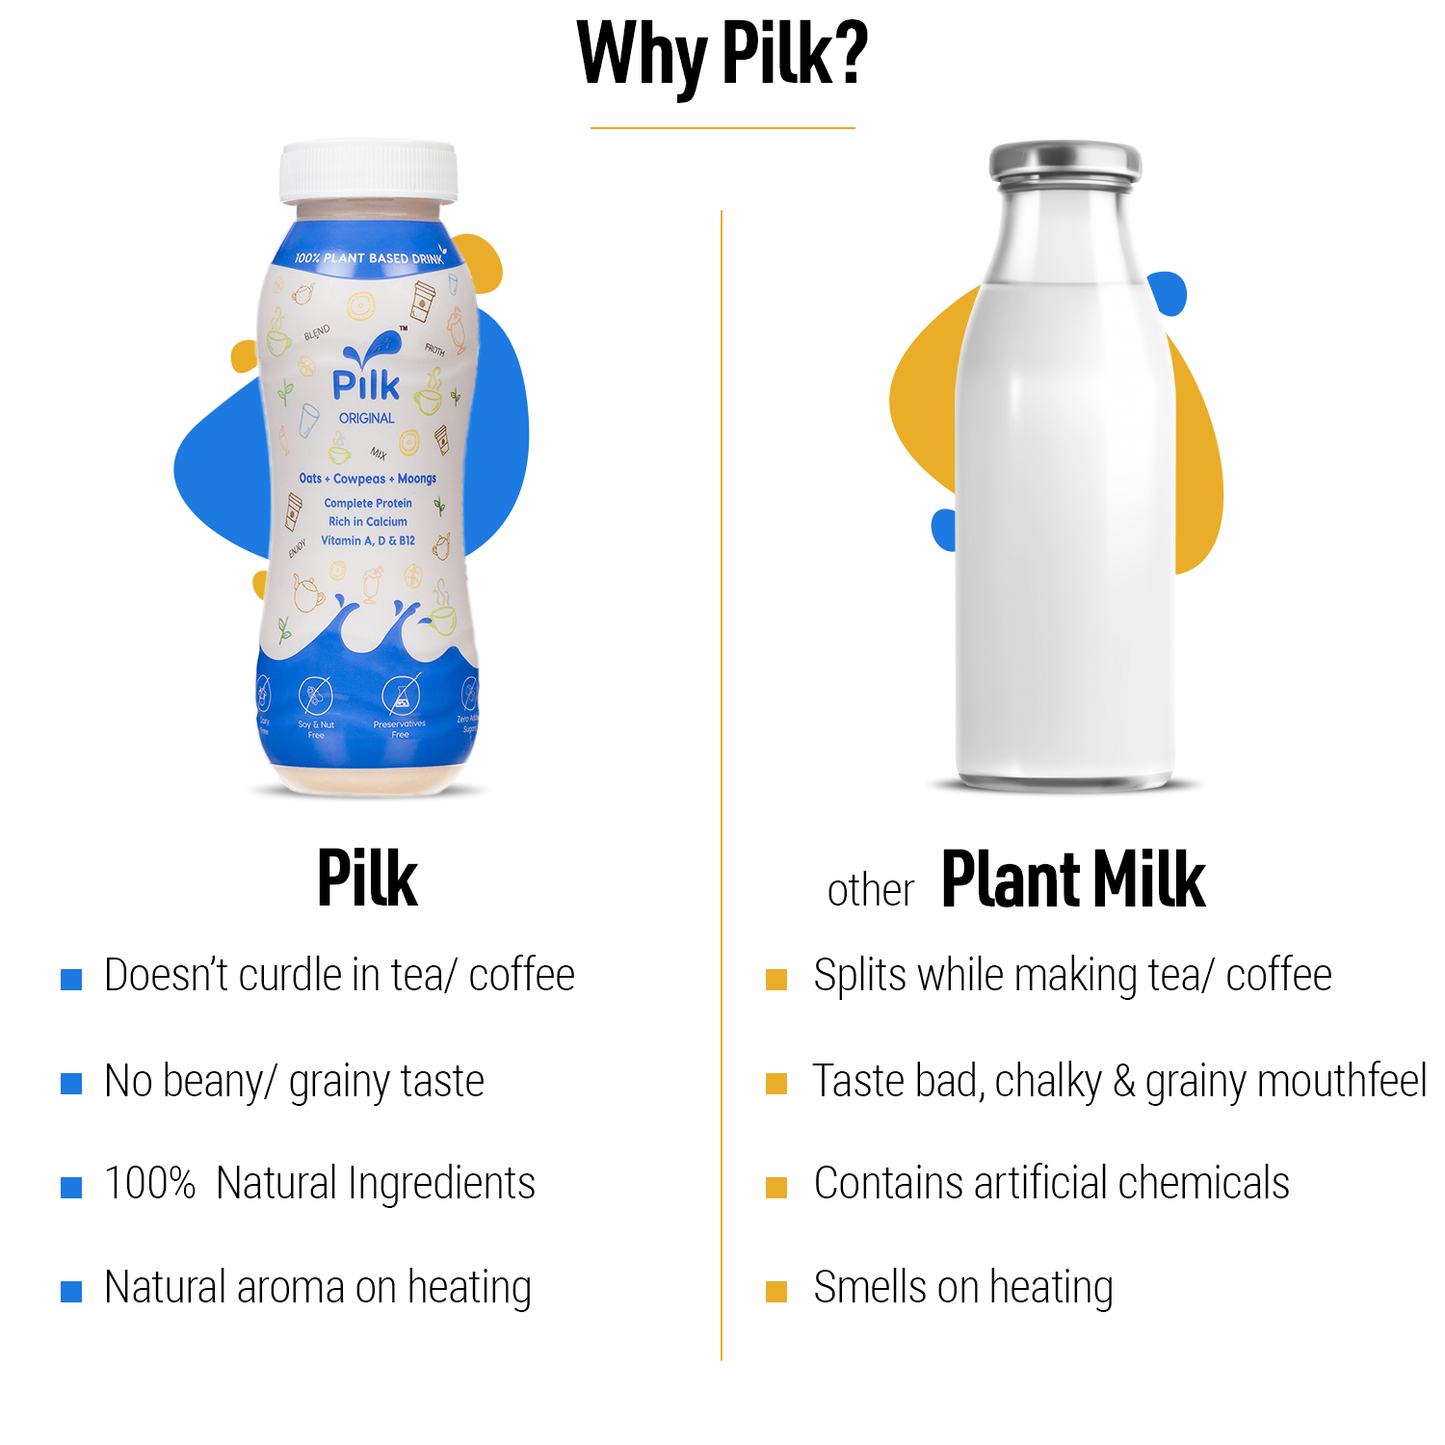 Pilk- [Pack of 48- 200 ml each]